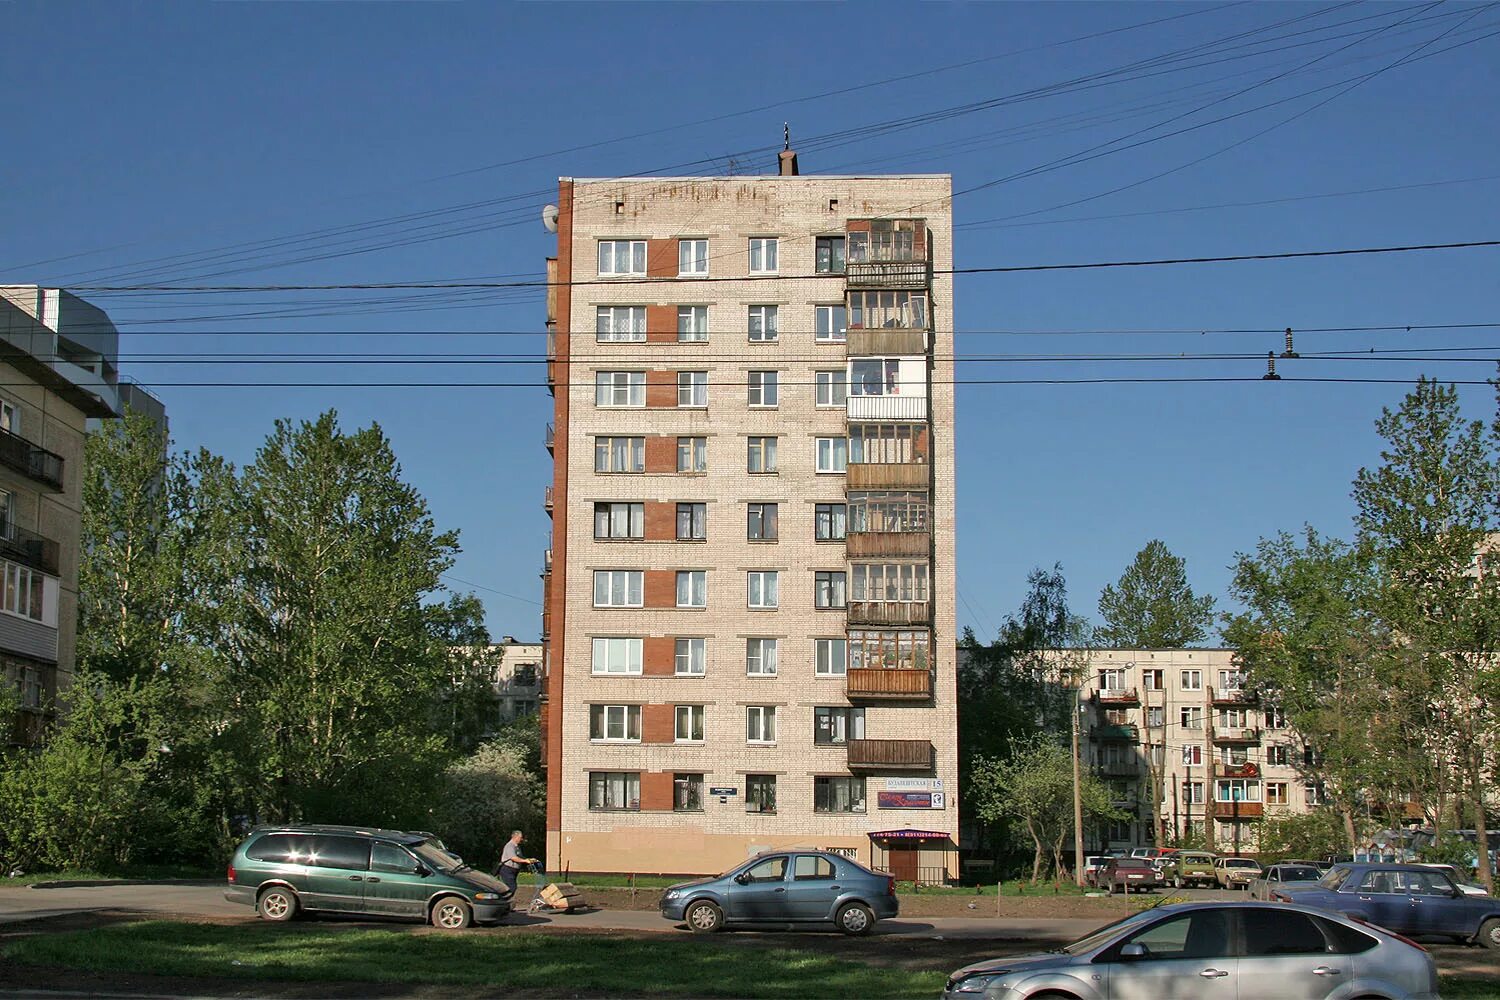 Панельная 9-ти этажка. Кирпичная 9-ти этажка. Панельная 9ти этажка в Москве. Панельная 9 этажка хрущевка.